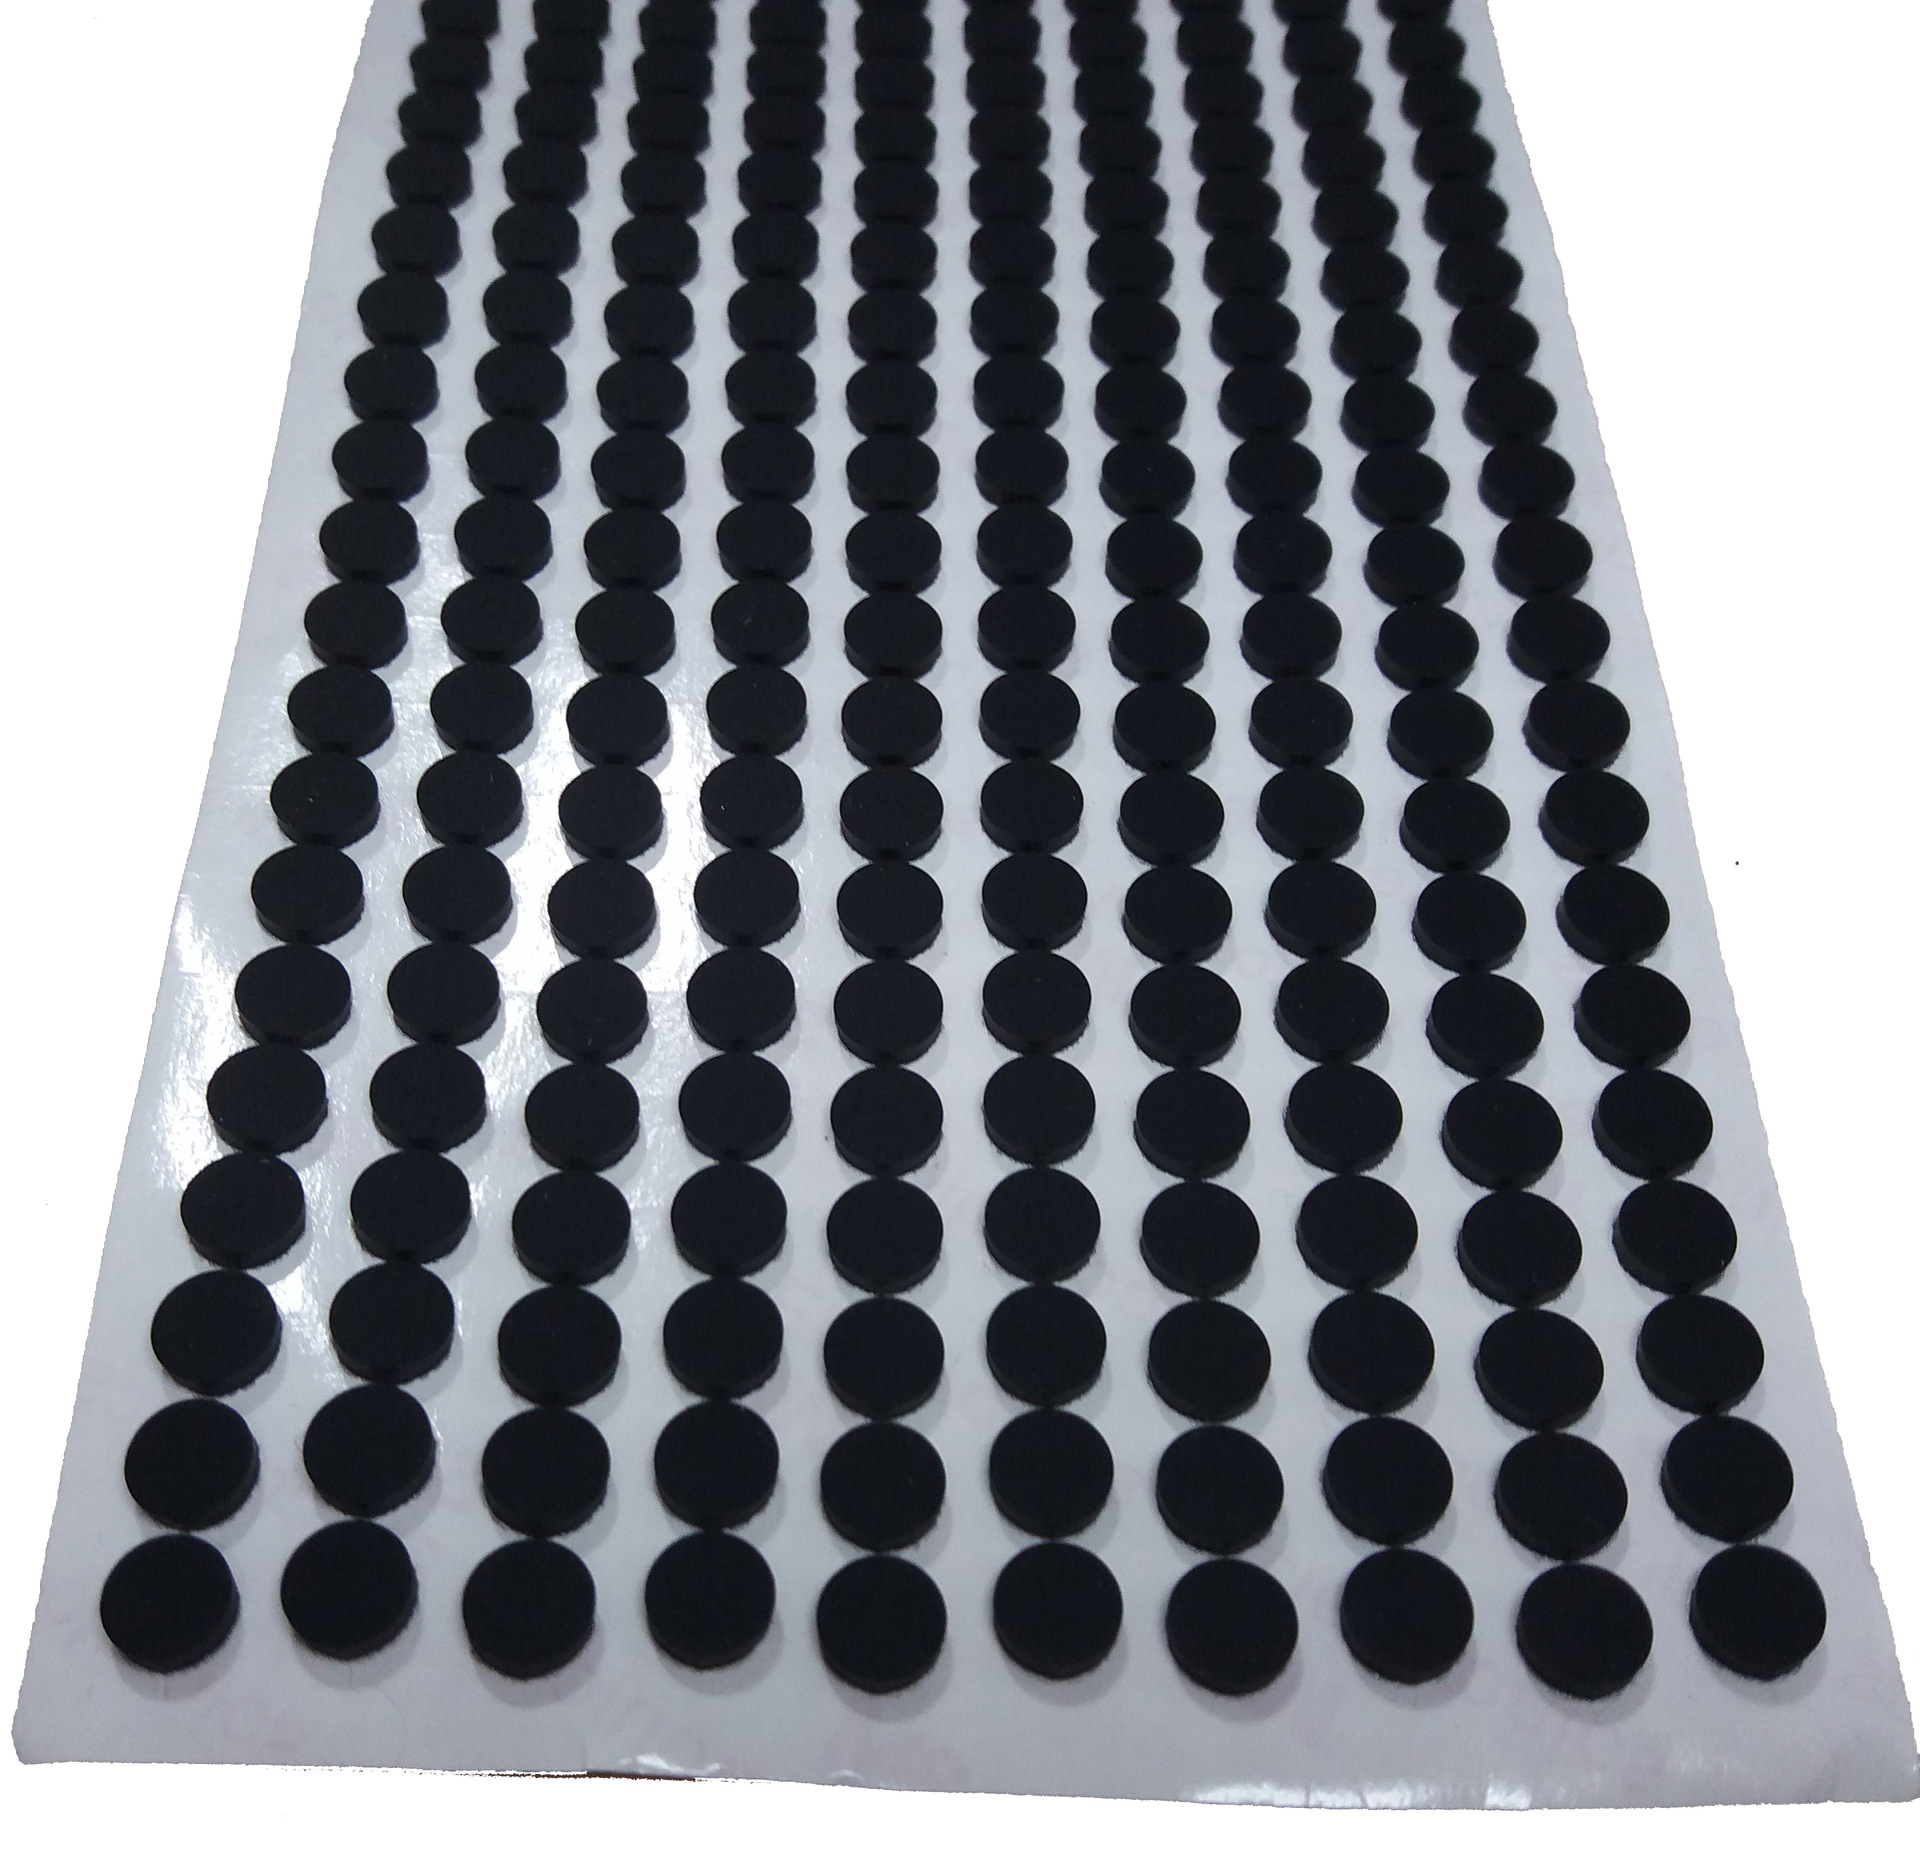 止撞透明雾面环保硅胶垫背胶3m止滑黑色磨砂硅胶脚垫自粘硅胶垫片